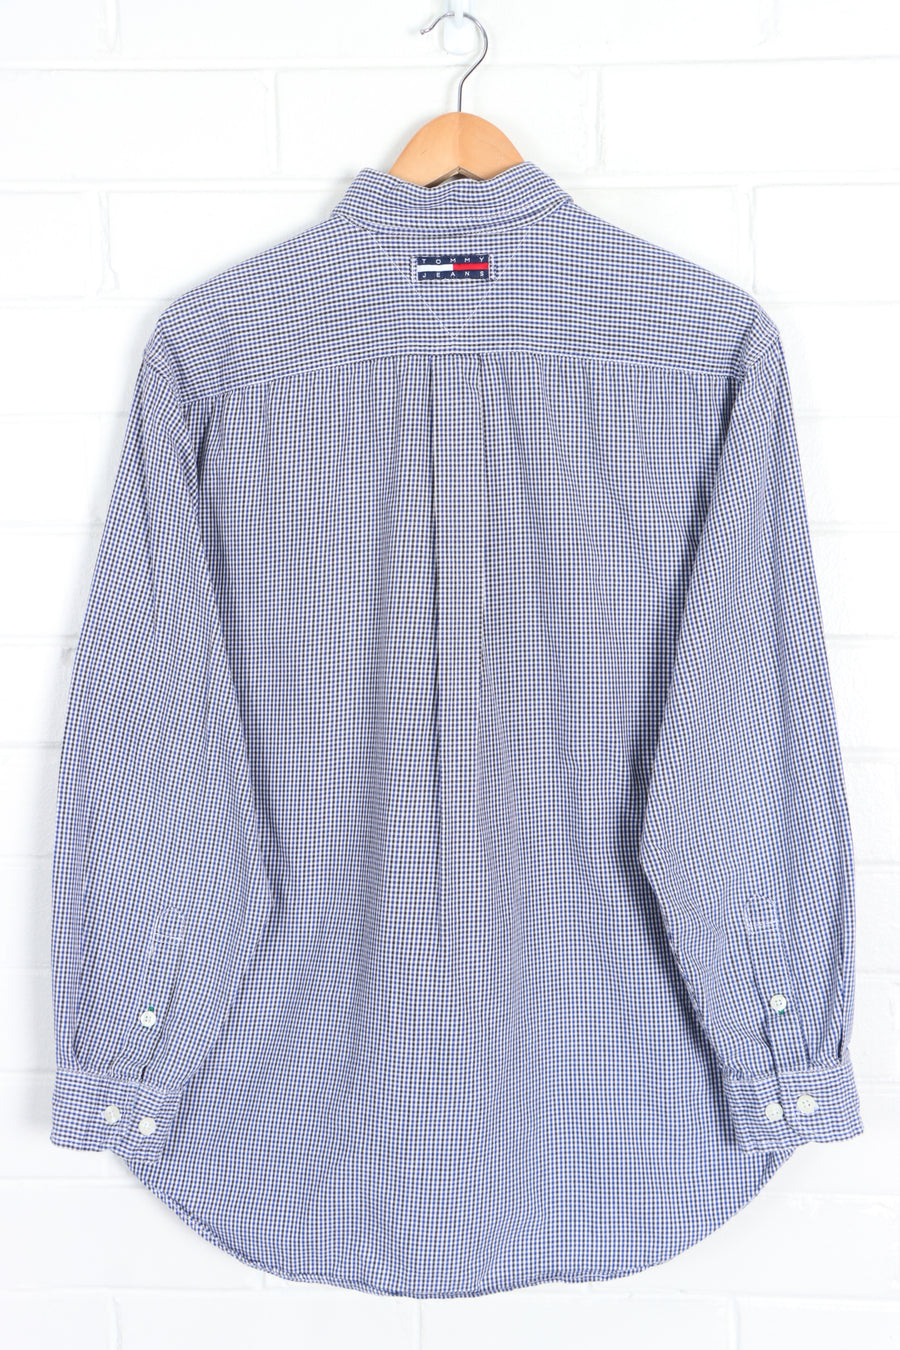 TOMMY HILFIGER JEANS Blue & Black Houndstooth Button Up Shirt (L) - Vintage Sole Melbourne